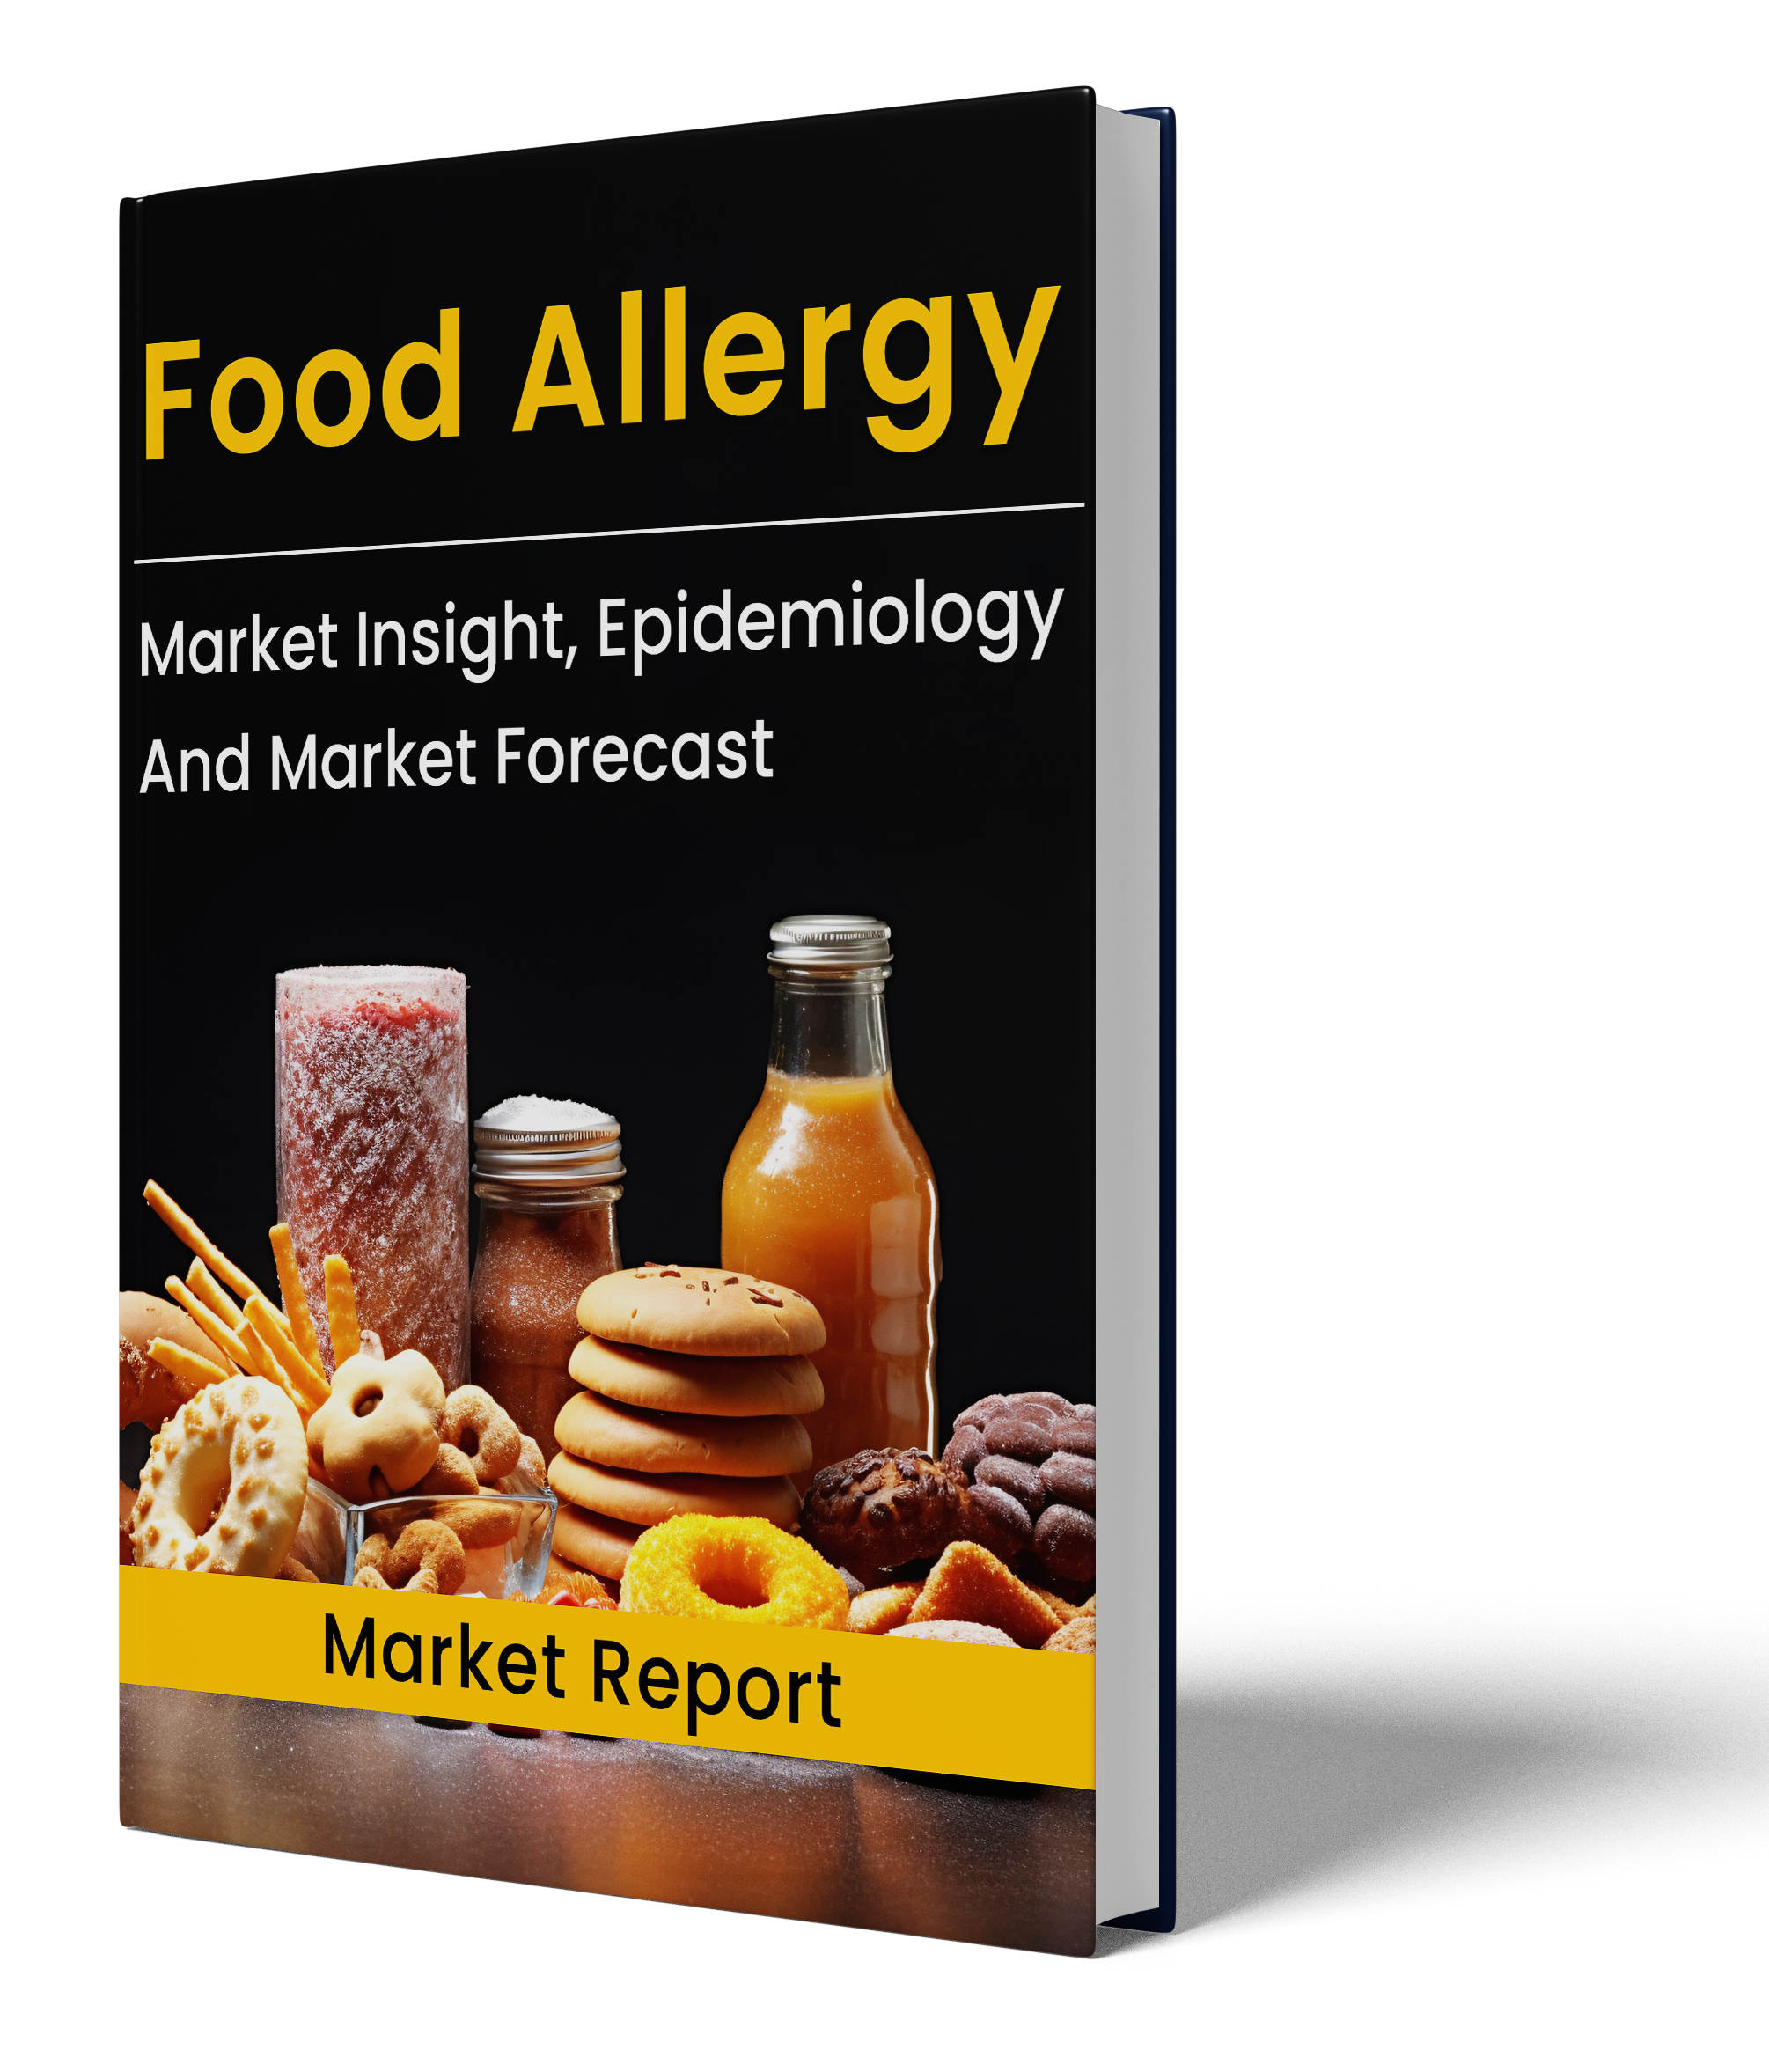 Food Allergy market report